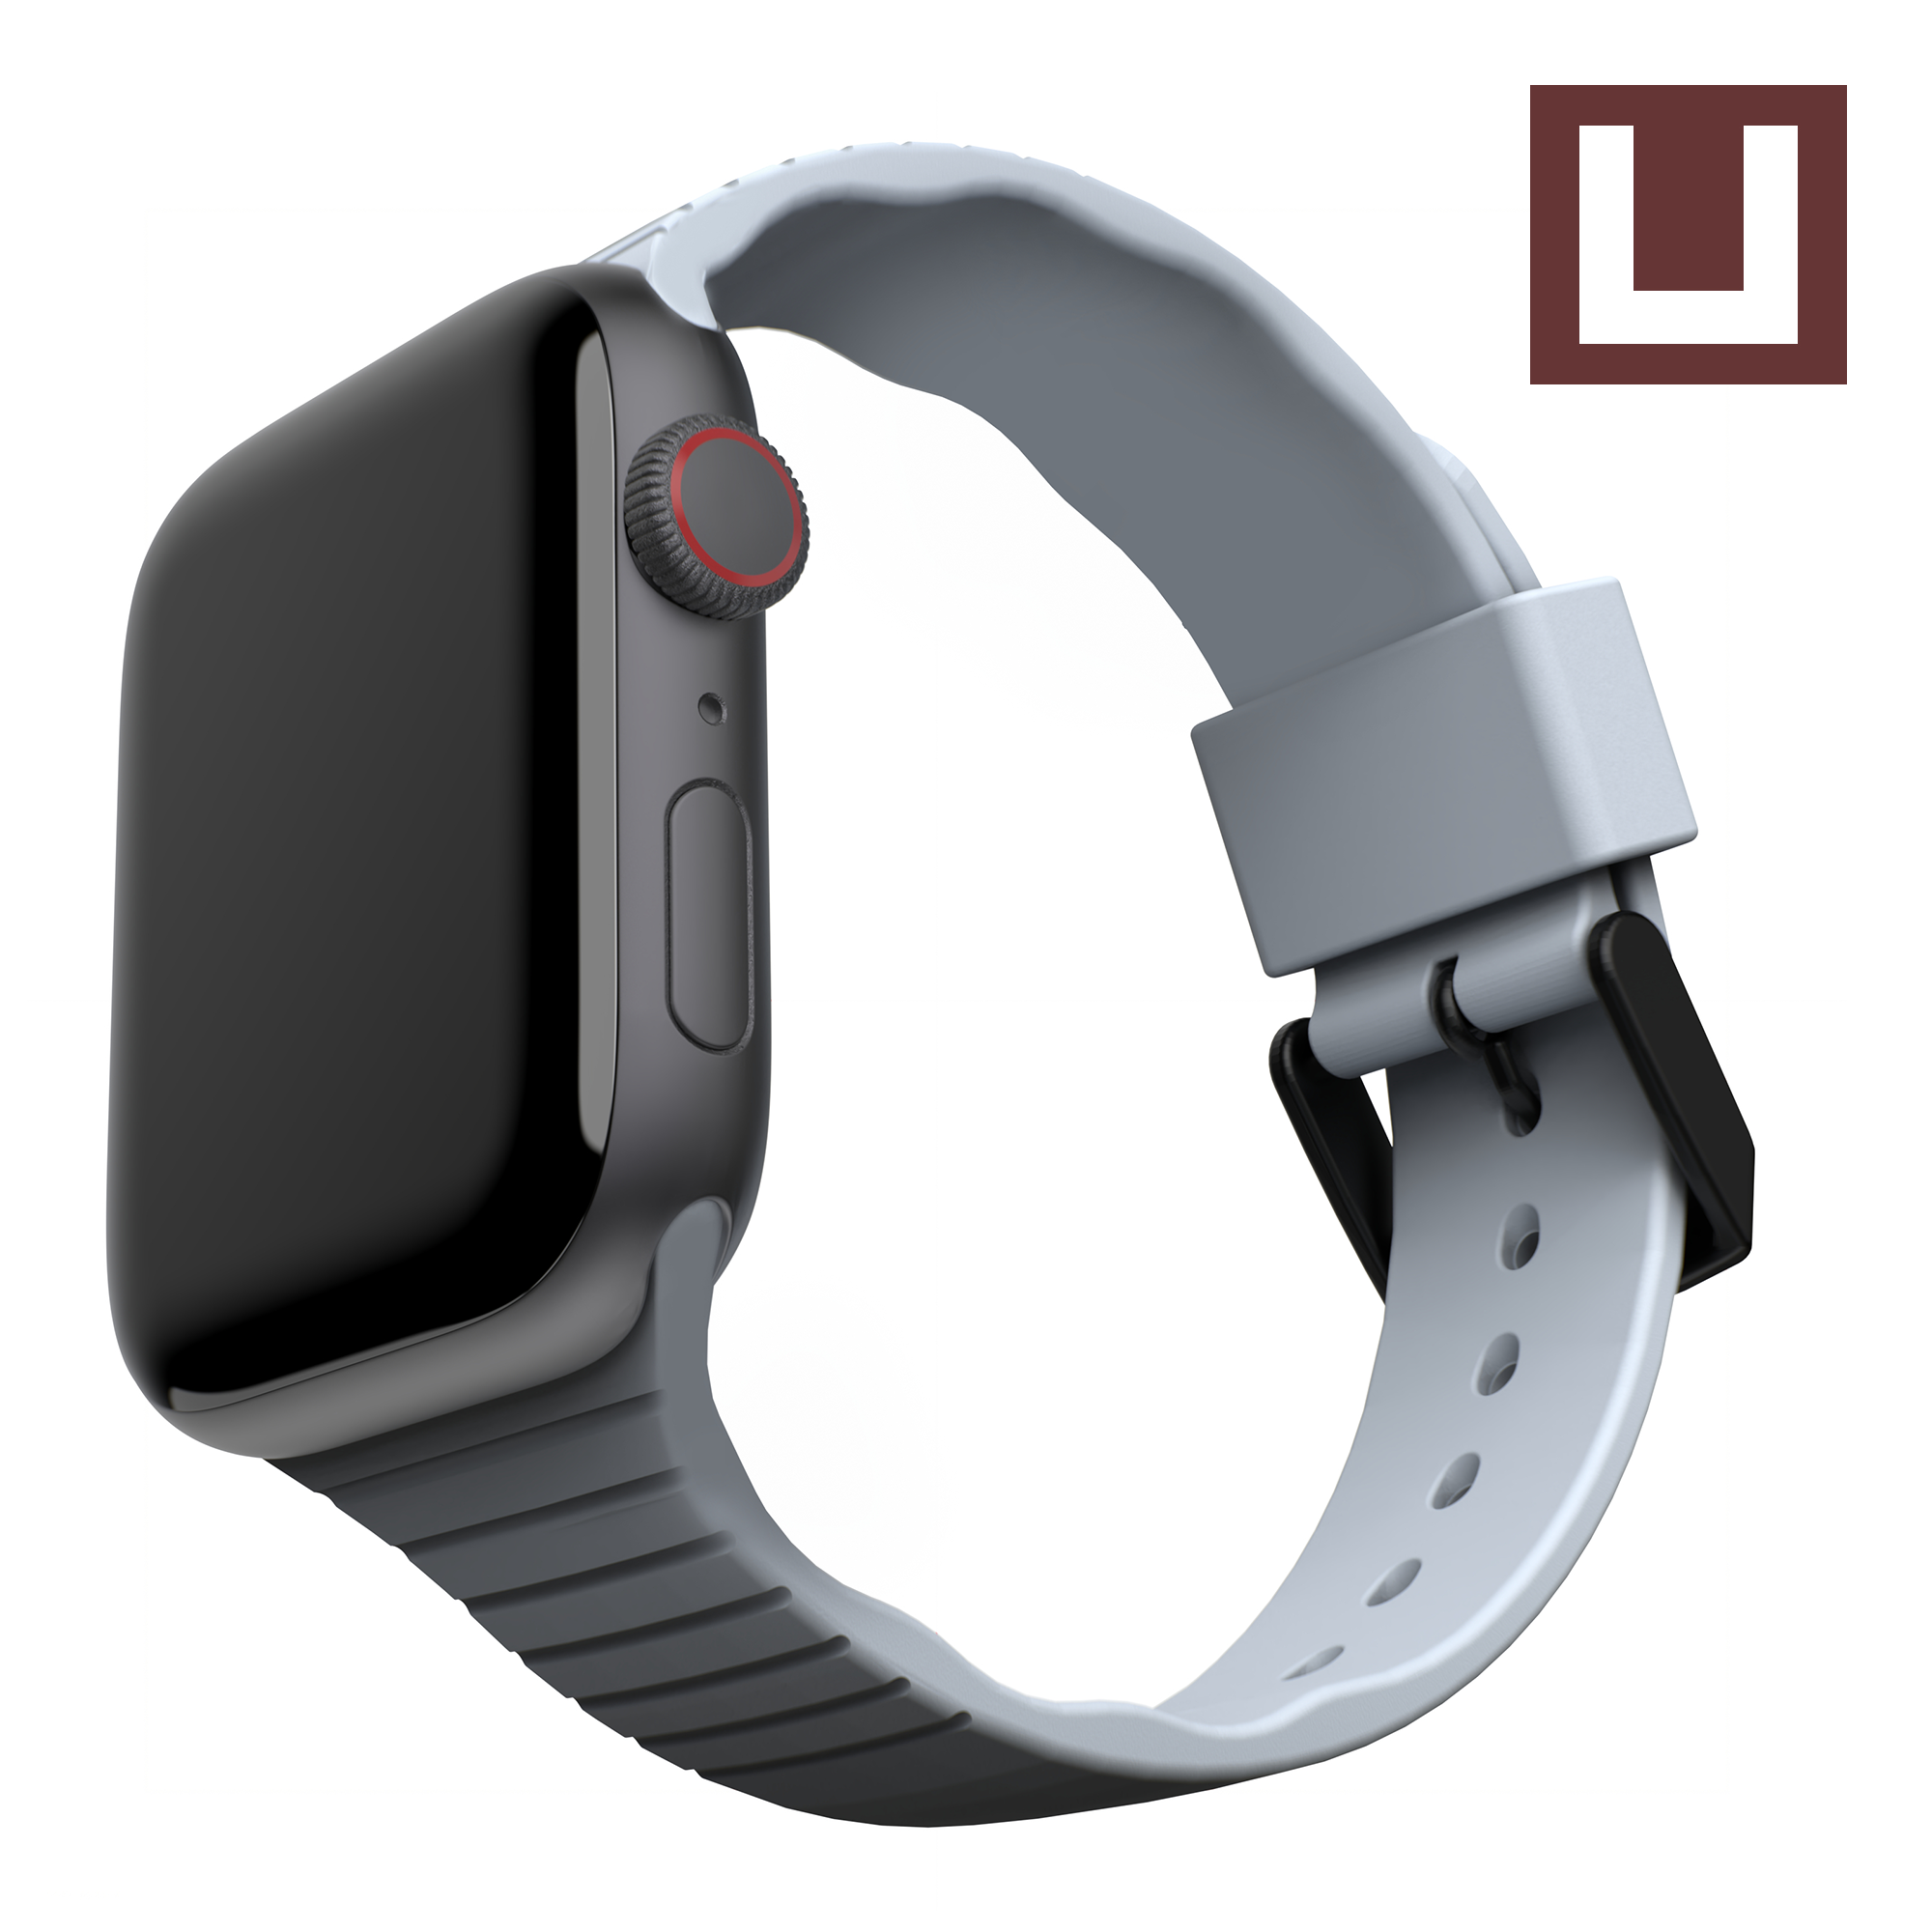  [U] Dây đồng hồ Aurora Silicone cho Apple Watch 